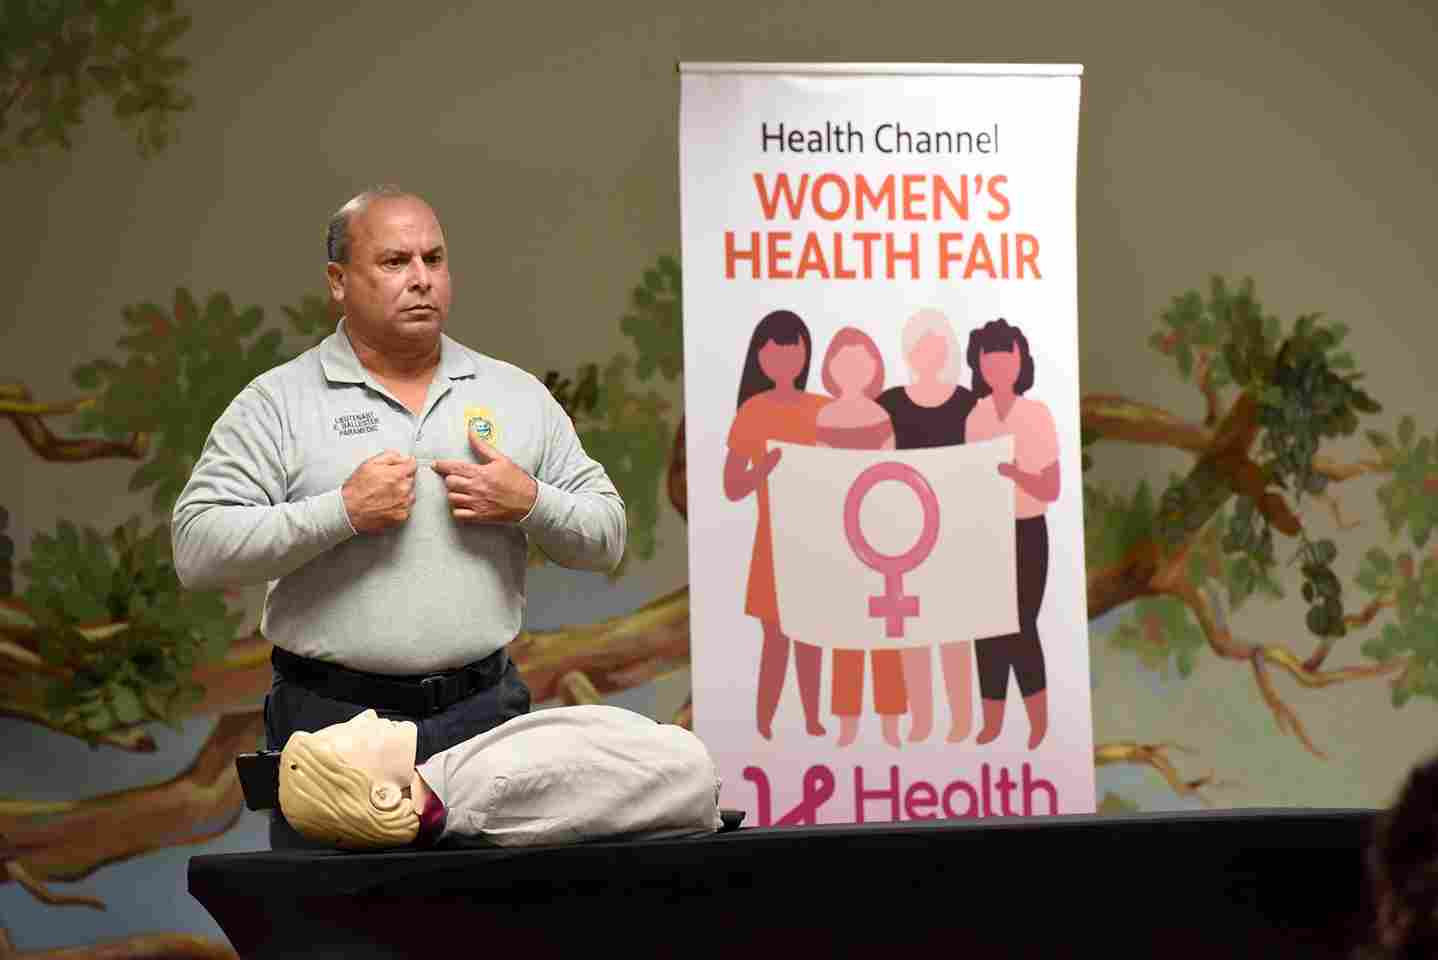 Women’s Health Fair, Health Channel